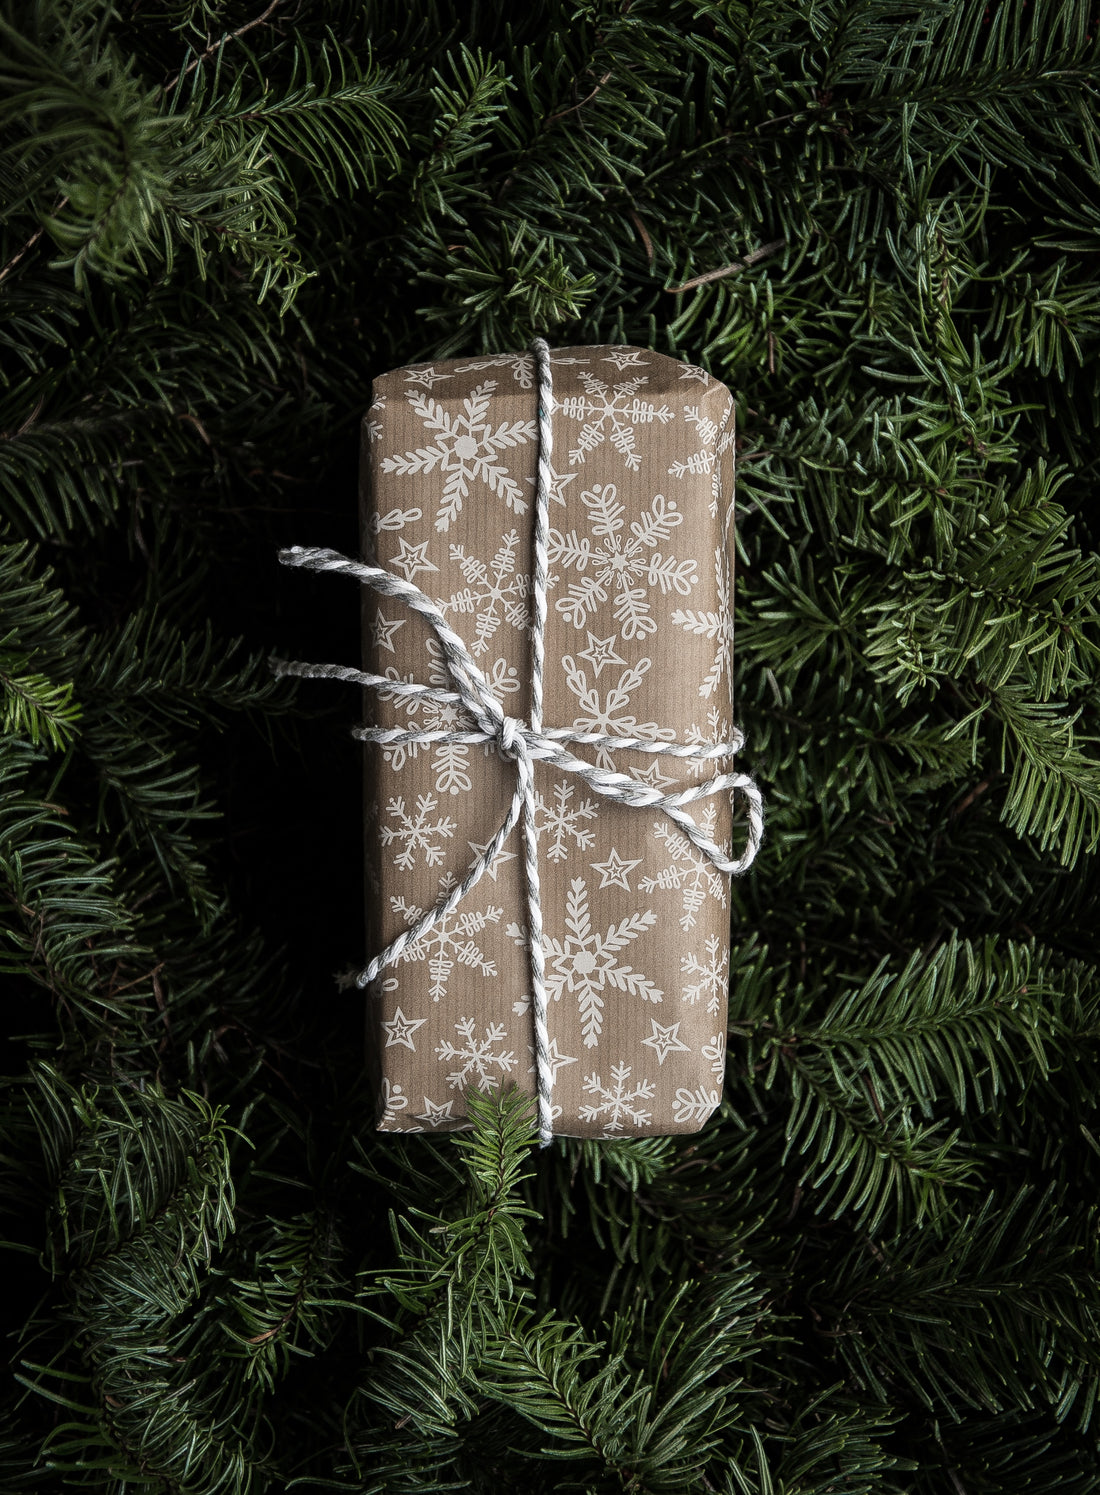 Seasonal Gifting